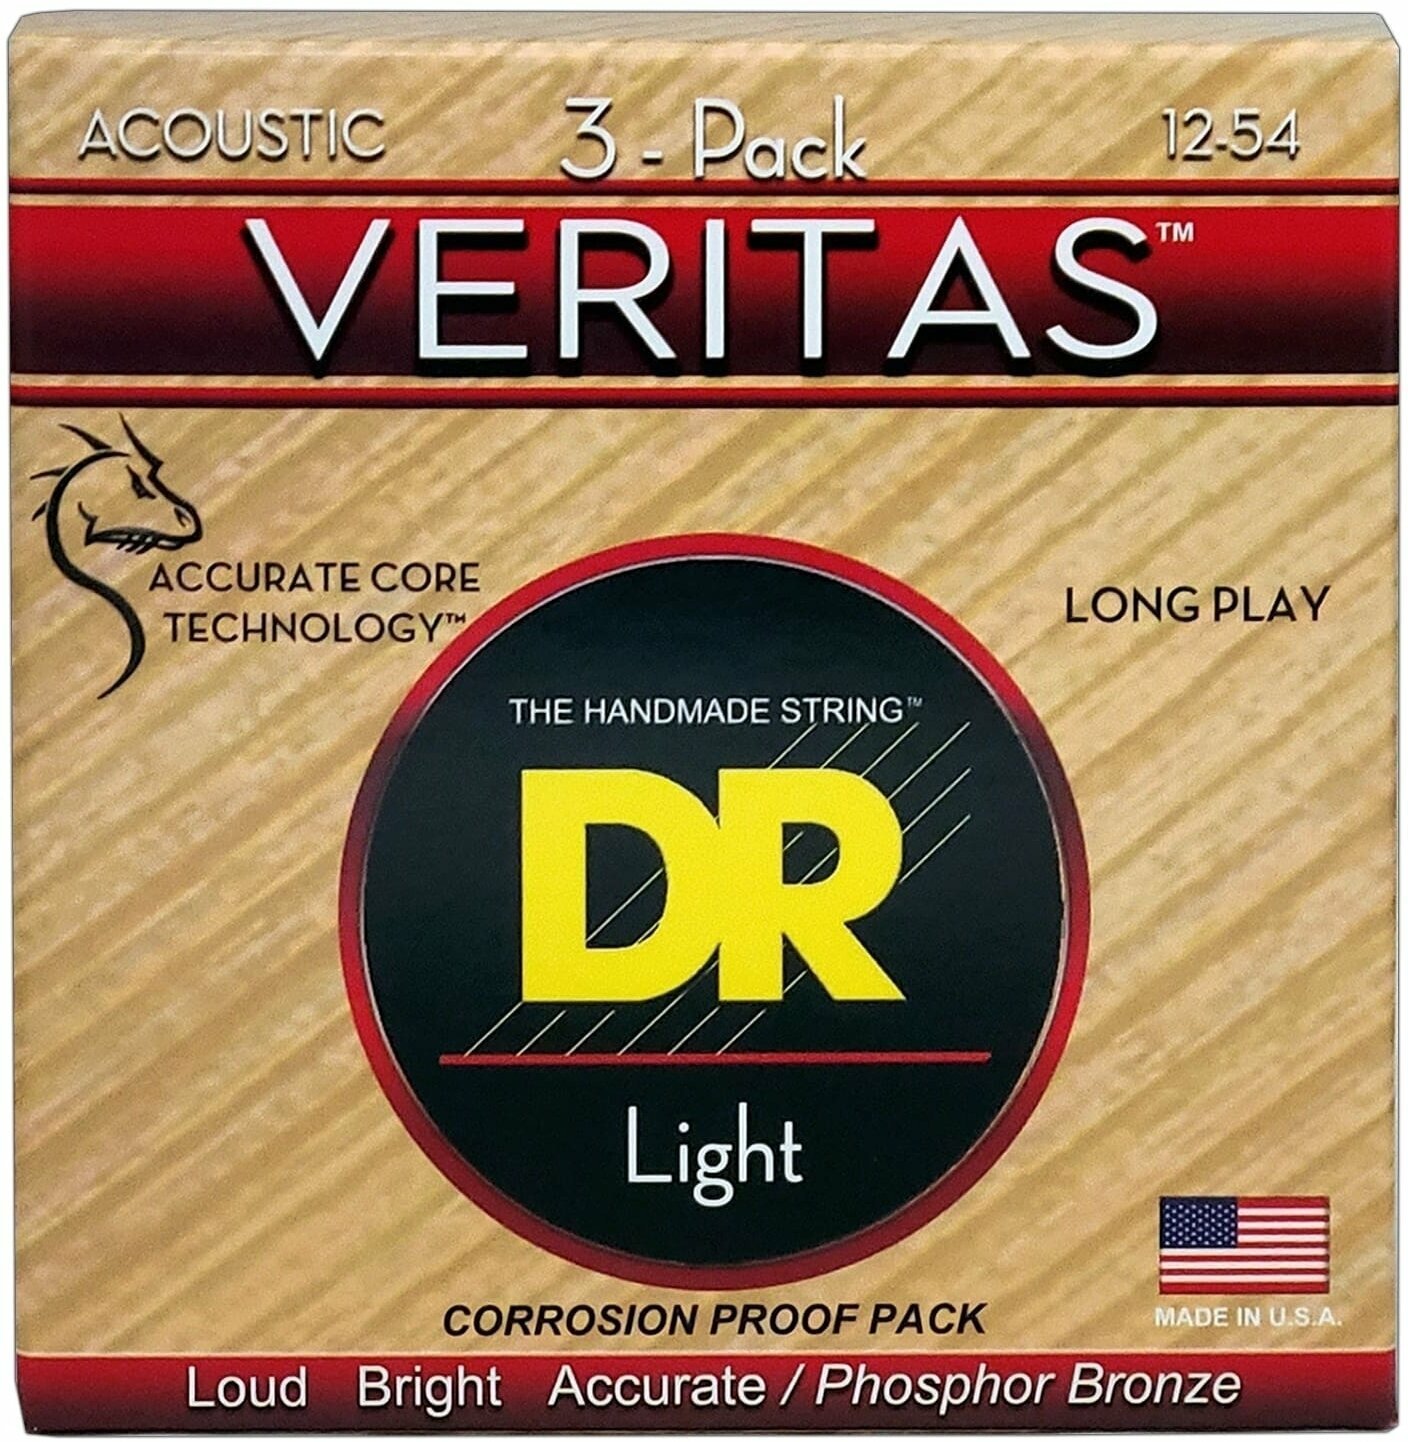 Guitar strings DR Strings VTA-12 Veritas 3-Pack